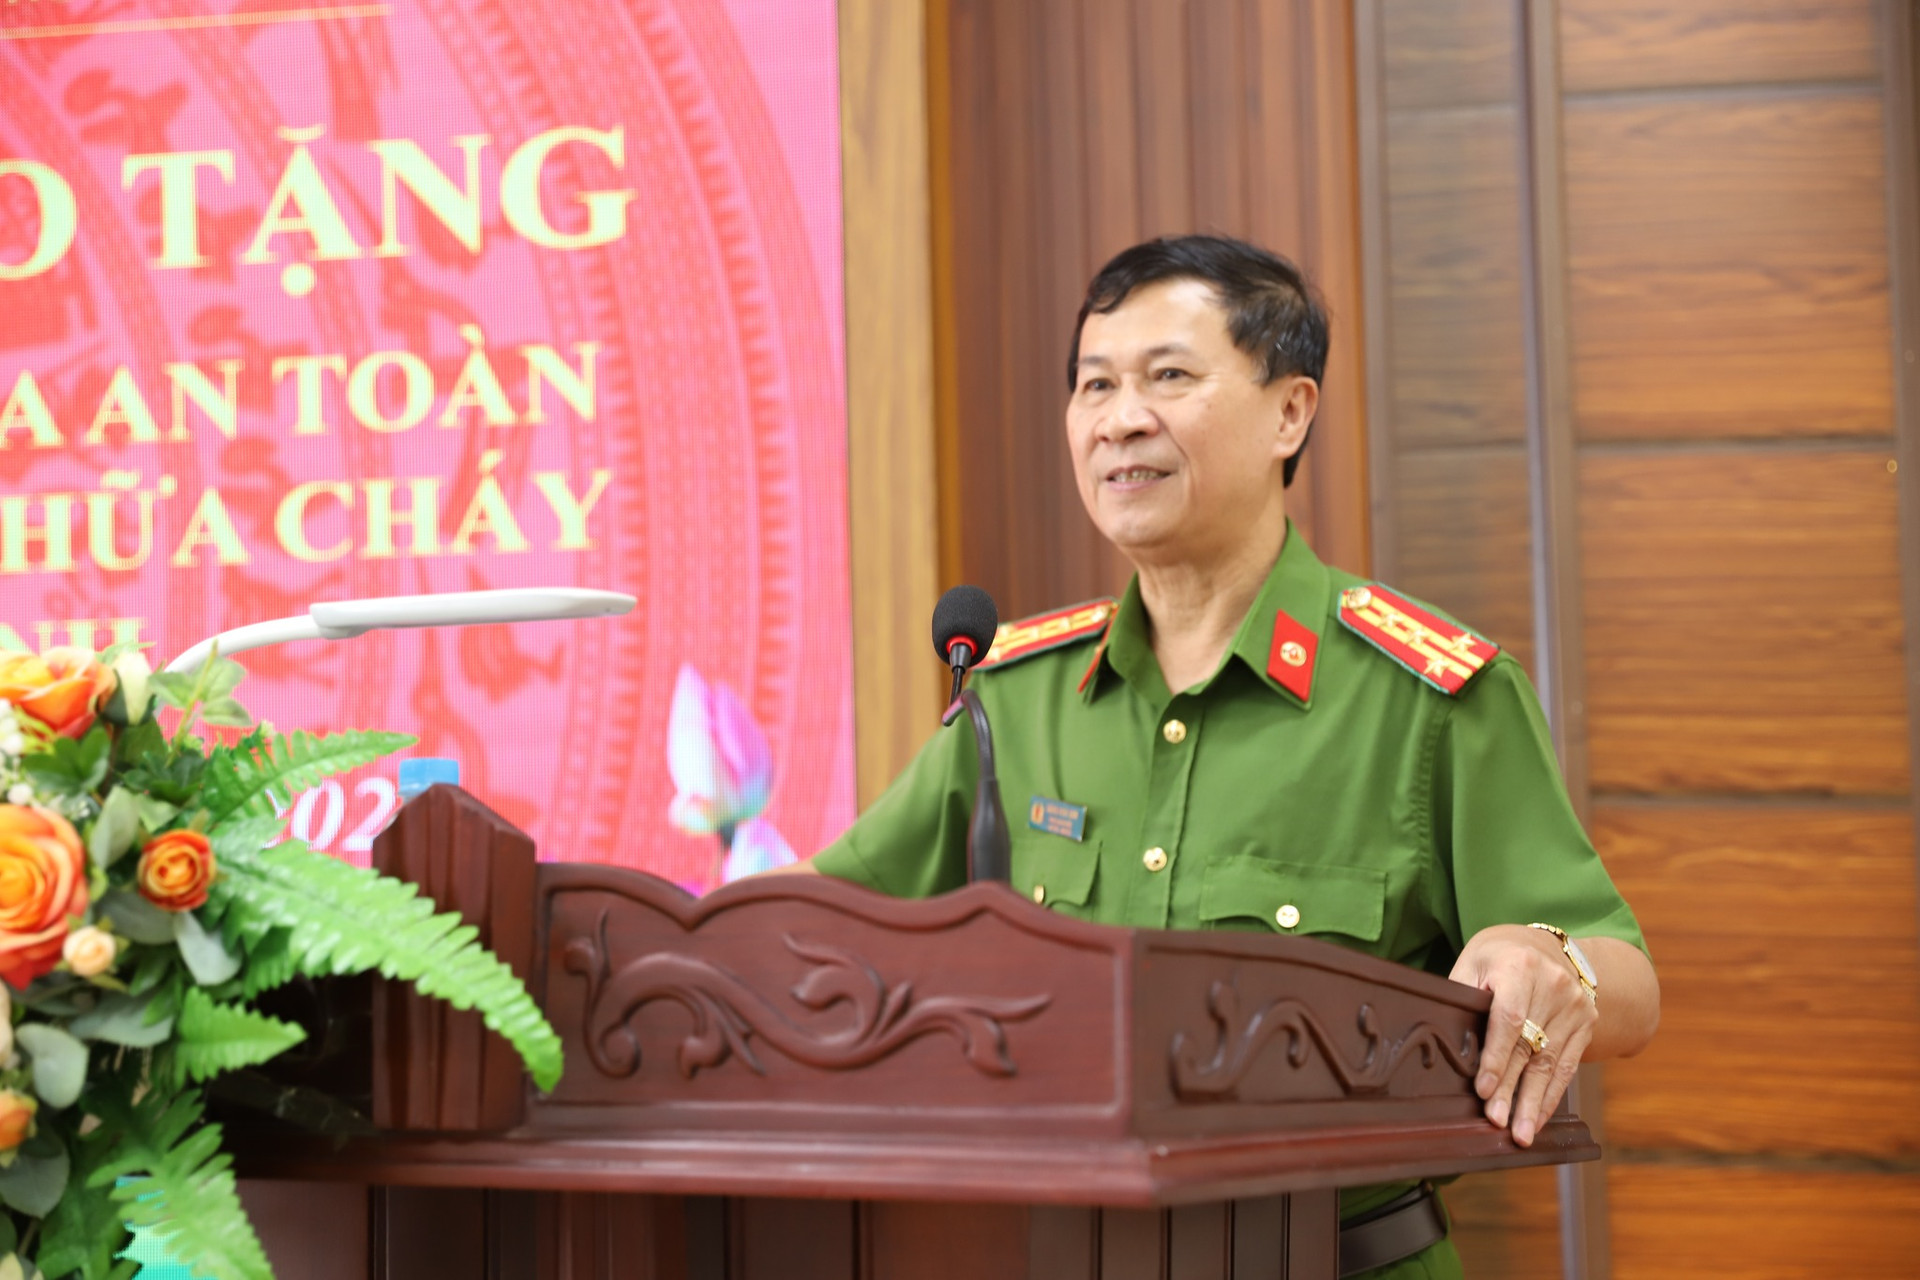 Đại tá Đặng Hoài Sơn - Phó giám đốc Công an tỉnh Hà Tĩnh phát biểu tại buổi lễ.